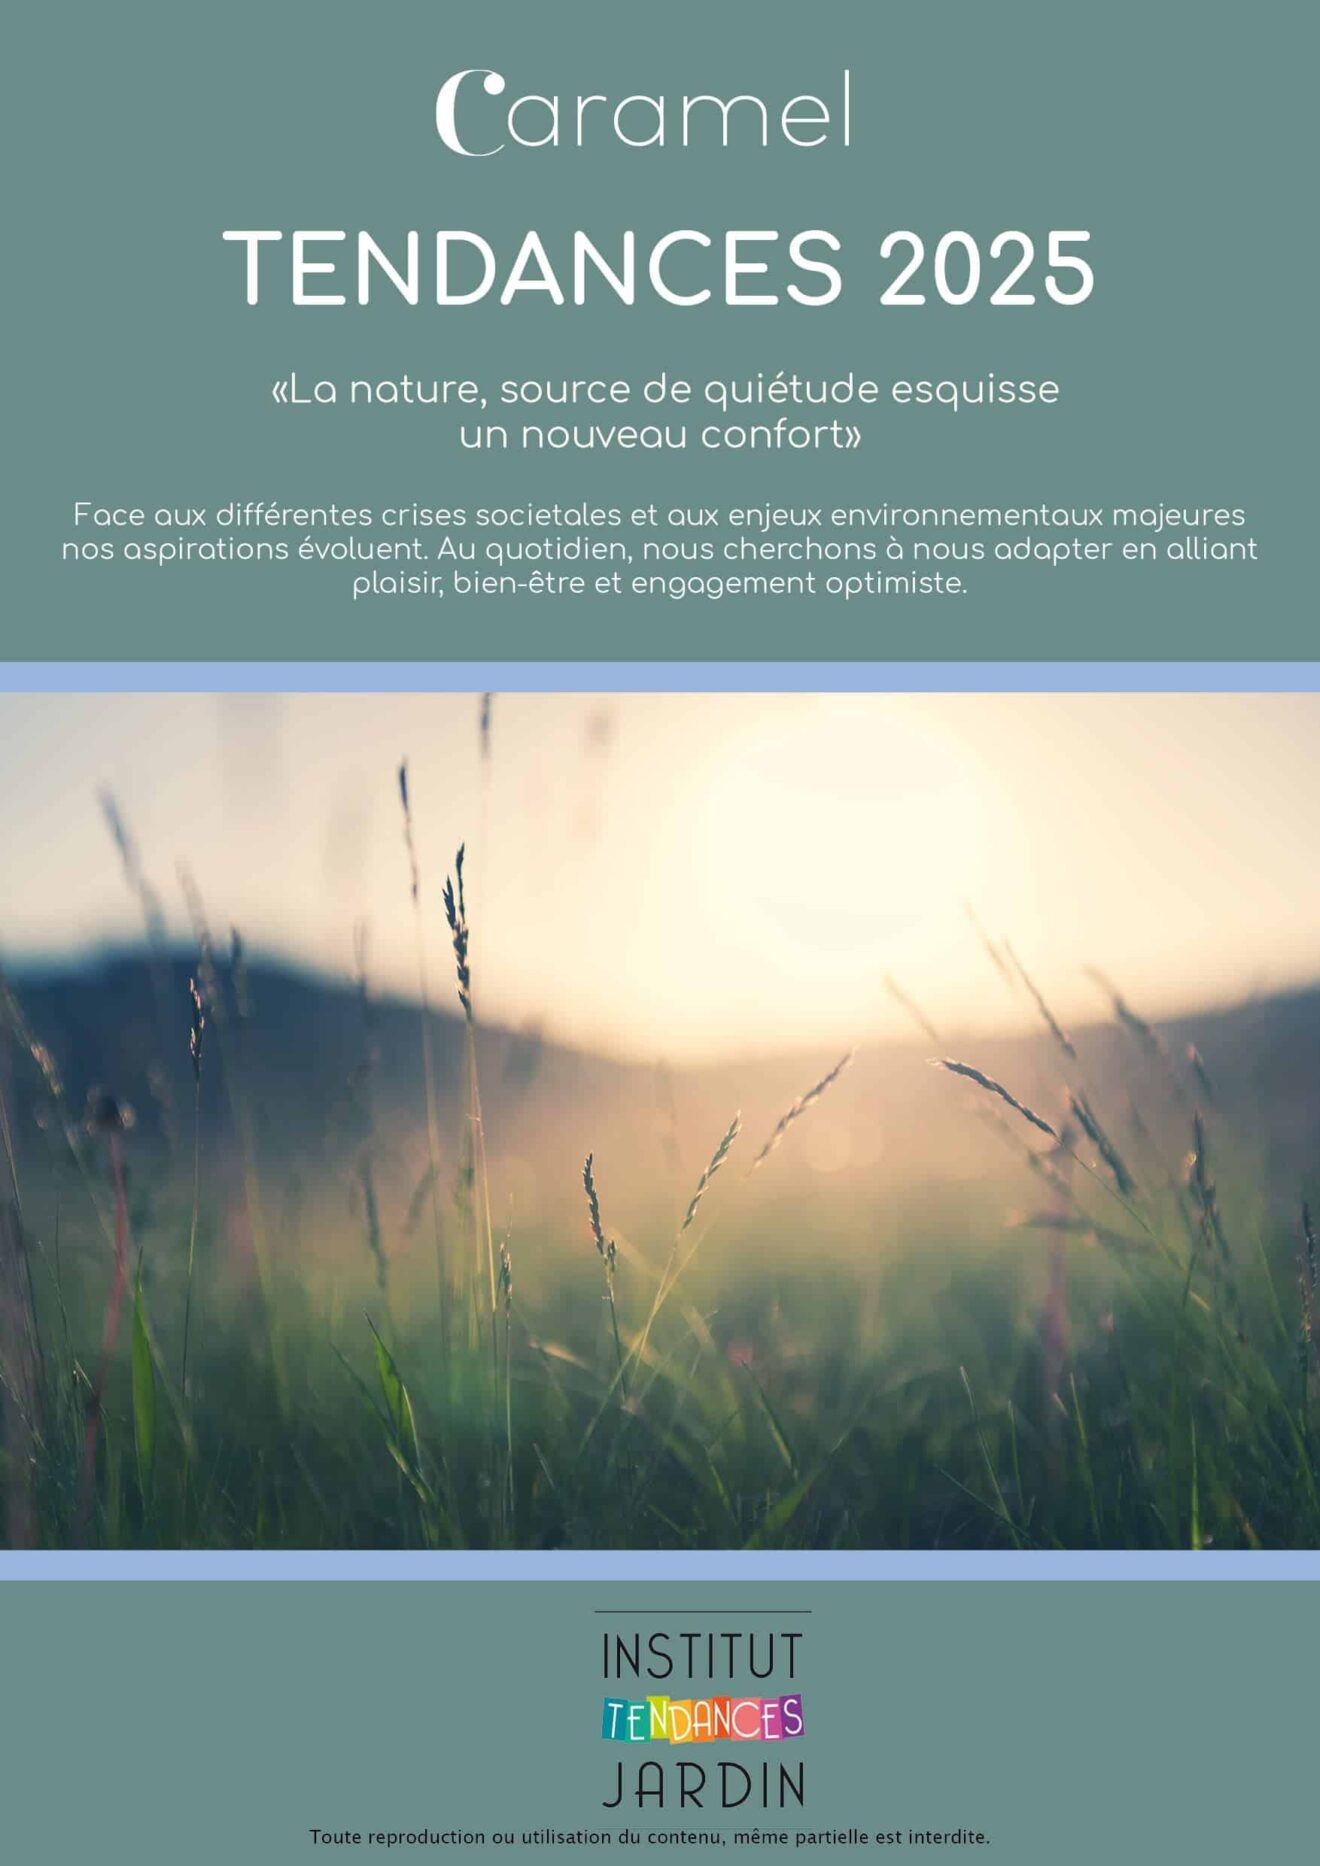 [Brève] Jeudi 26 janvier 2023, l’Institut des Tendances Jardin présente son Book de Tendances 2025